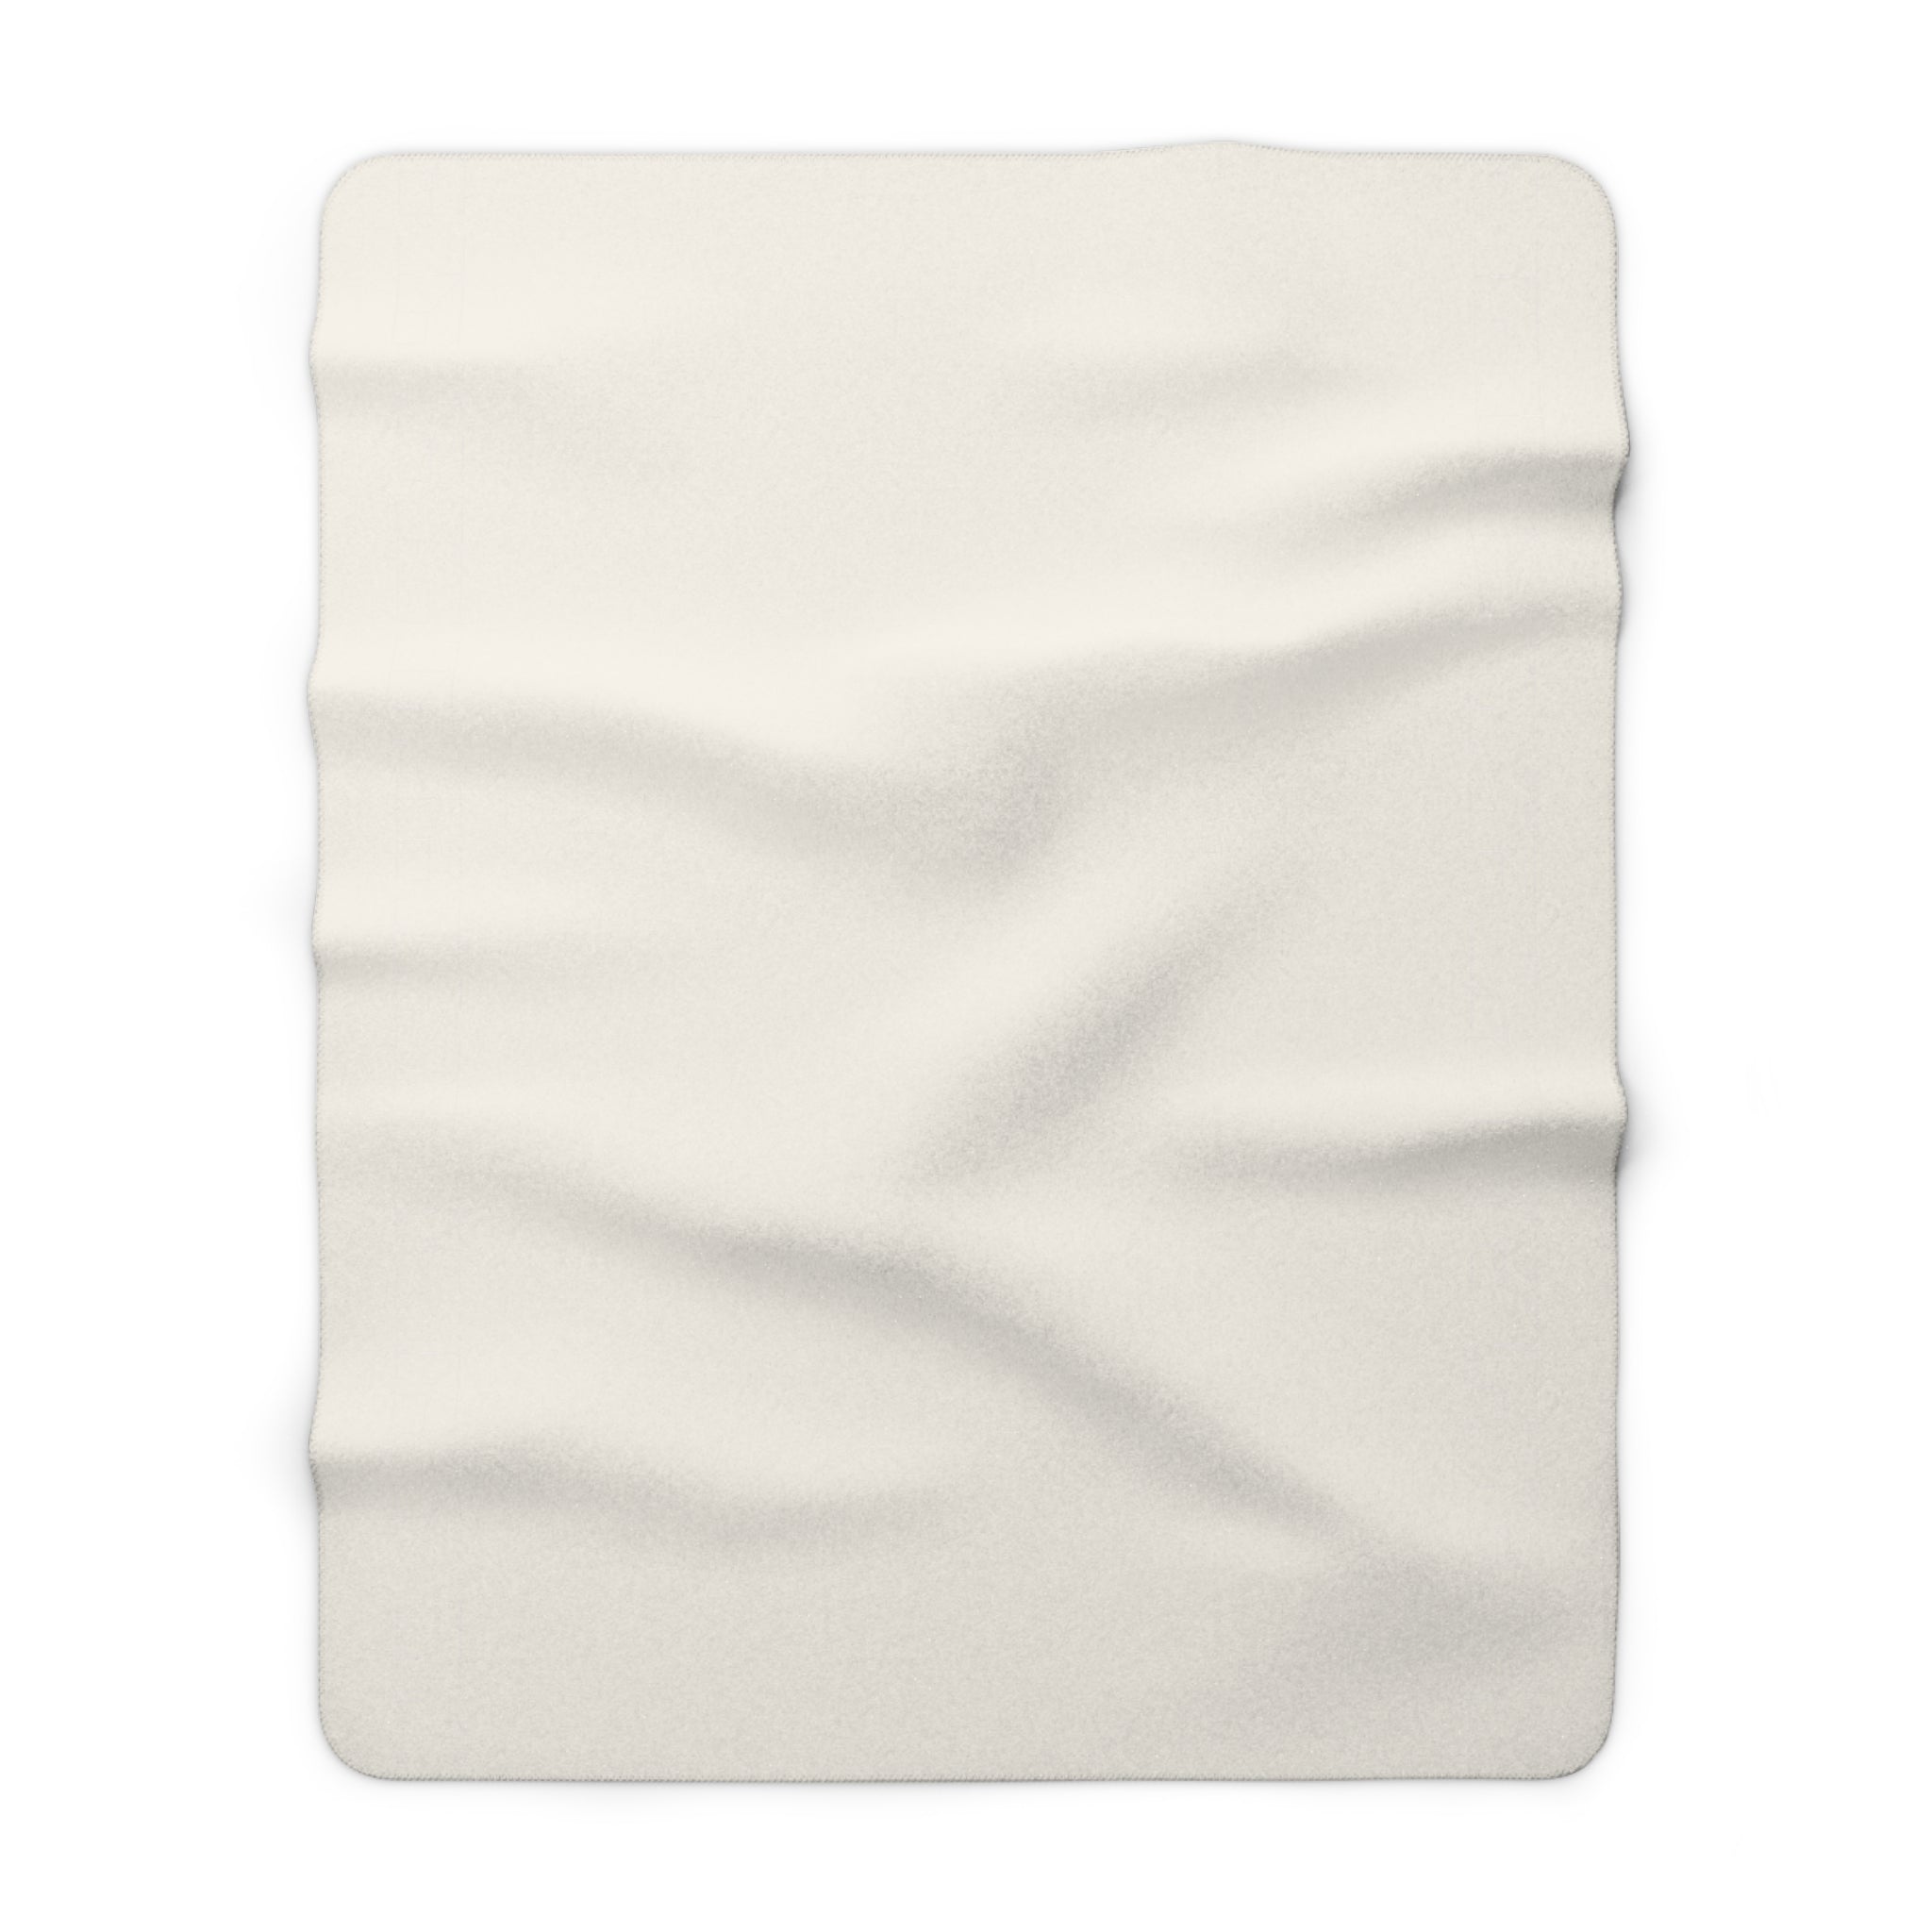 Sherpa Fleece Blanket - Bone White